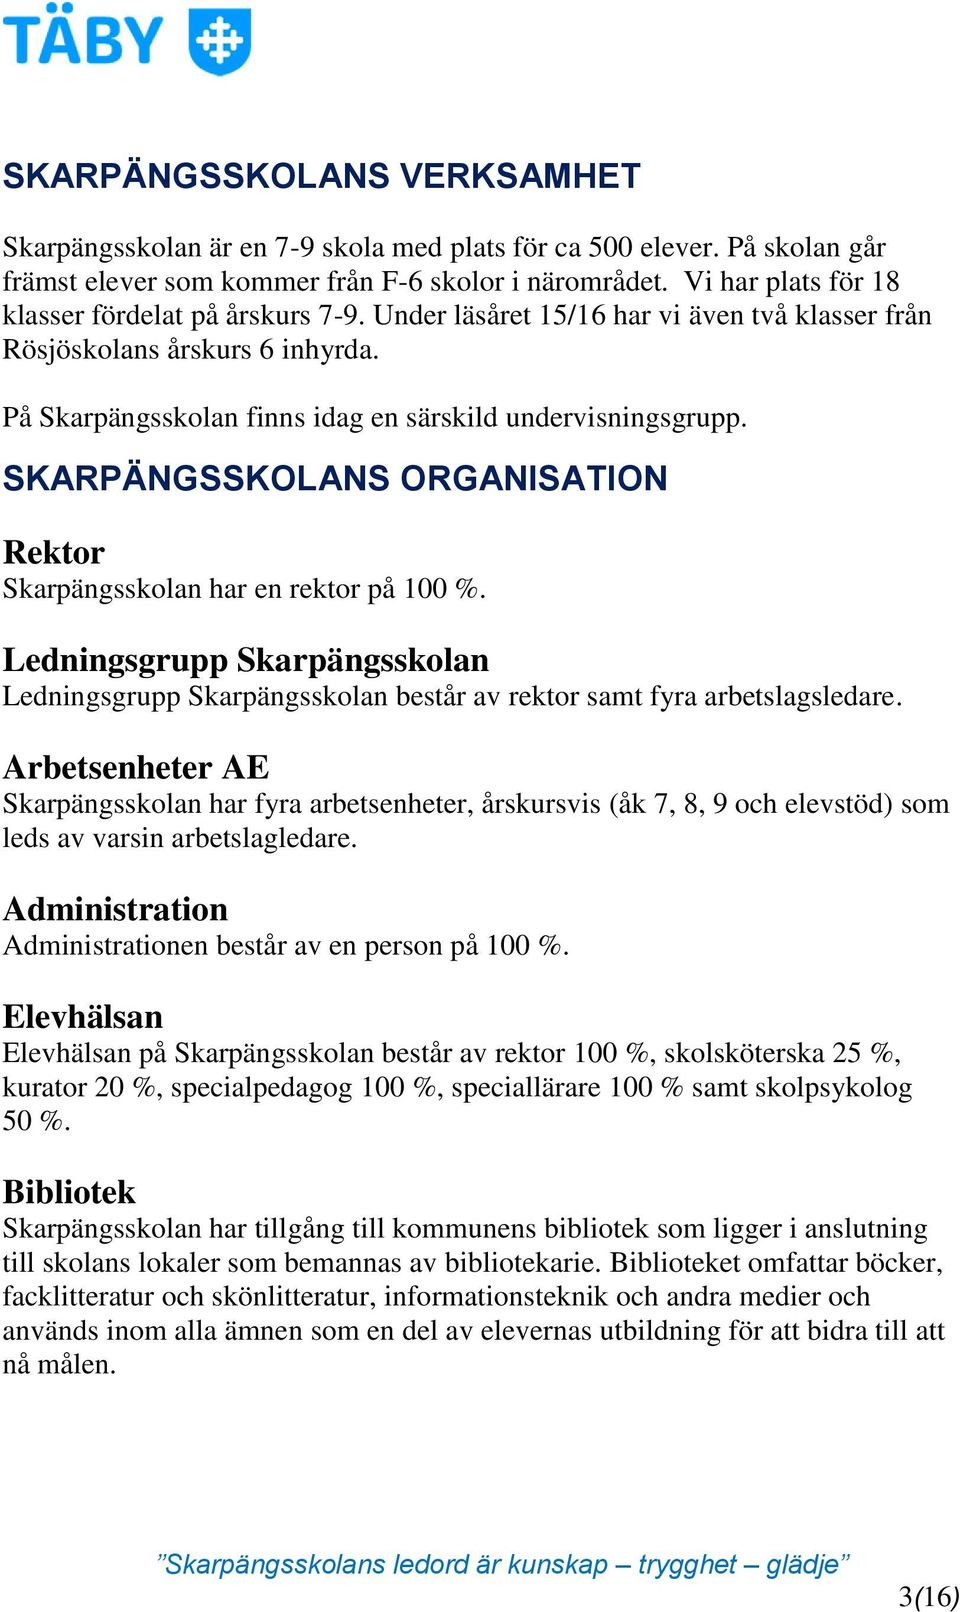 SKARPÄNGSSKOLANS ORGANISATION Rektor Skarpängsskolan har en rektor på 100 %. Ledningsgrupp Skarpängsskolan Ledningsgrupp Skarpängsskolan består av rektor samt fyra arbetslagsledare.